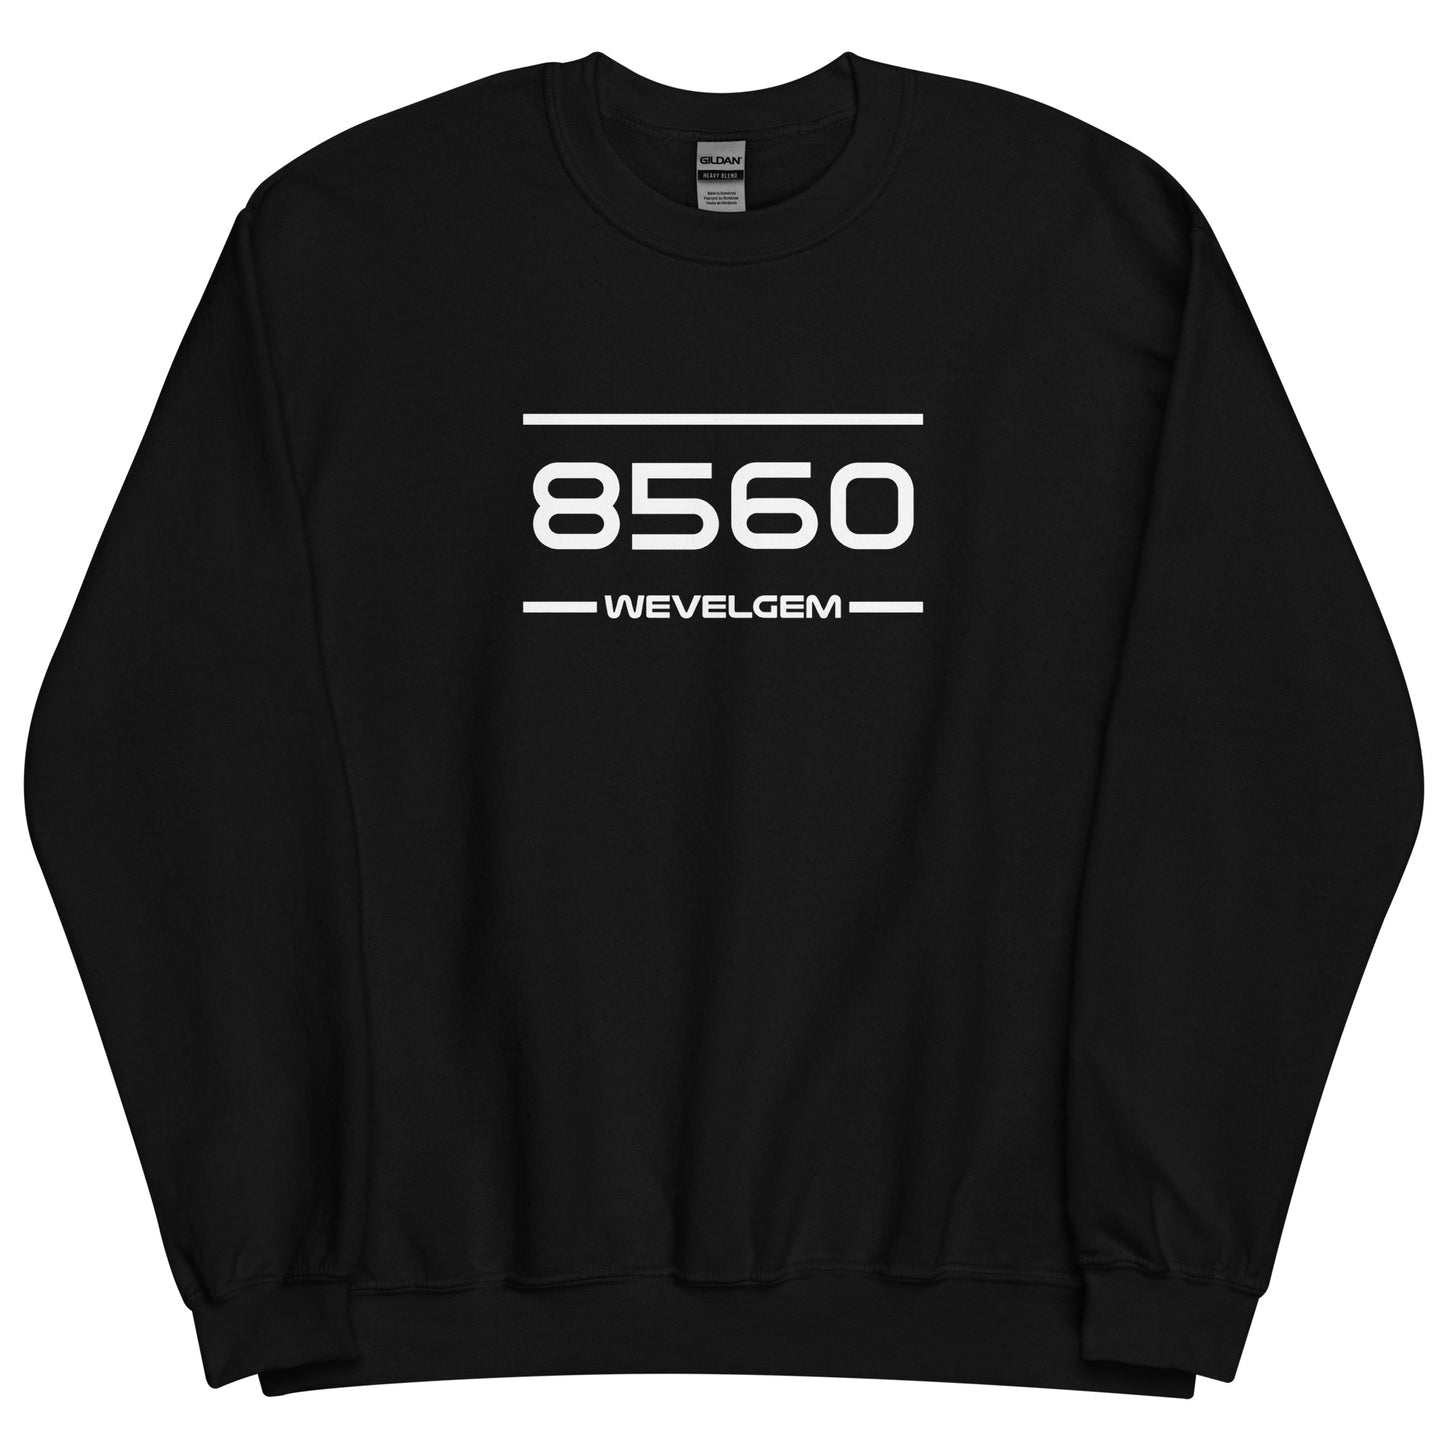 Sweater - 8560 - Wevelgem (M/V)